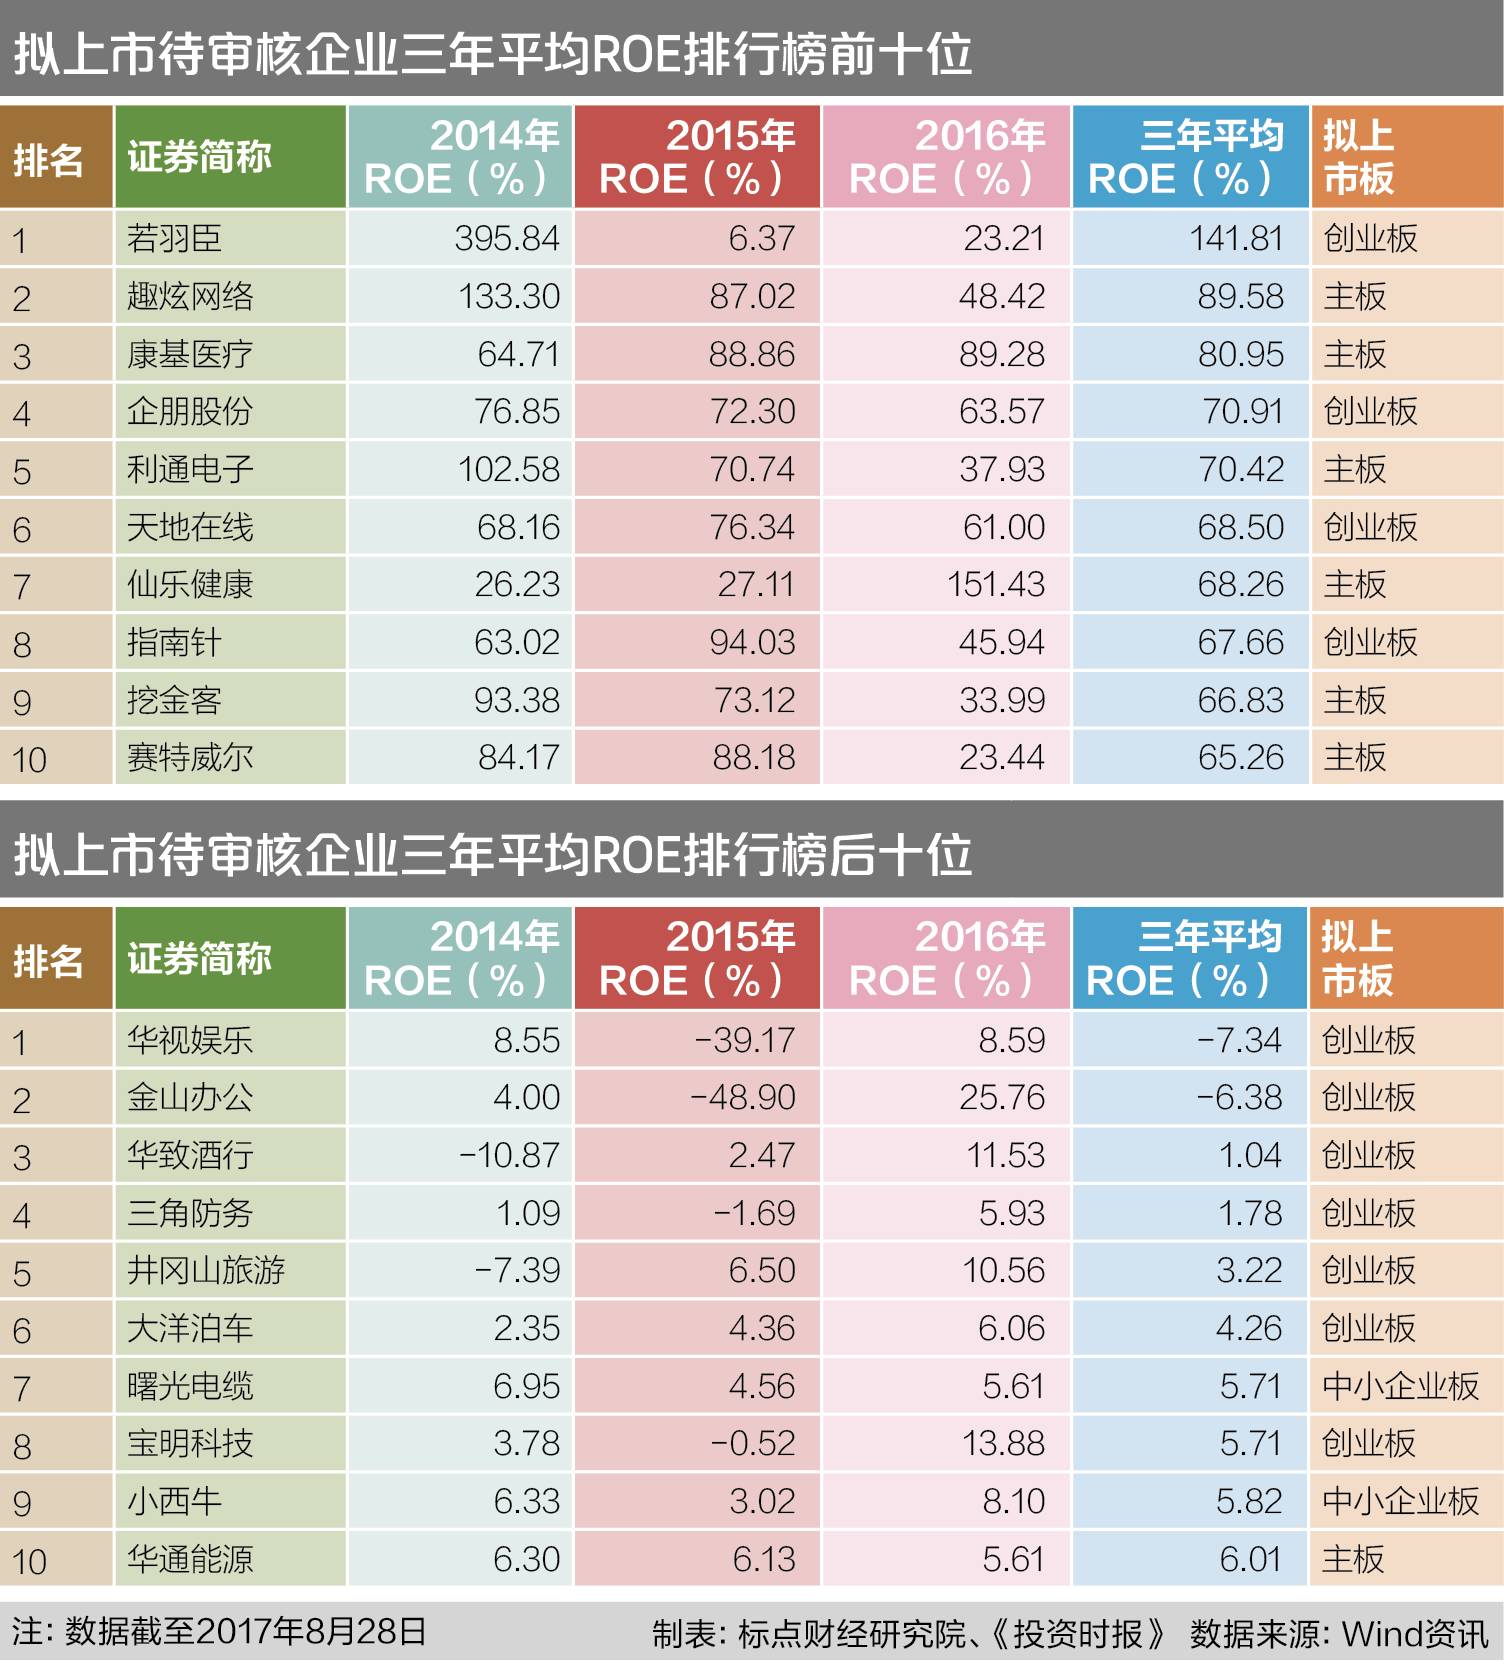 拟IPO企业盈利能力捉对比拼:苏州银行平均RO